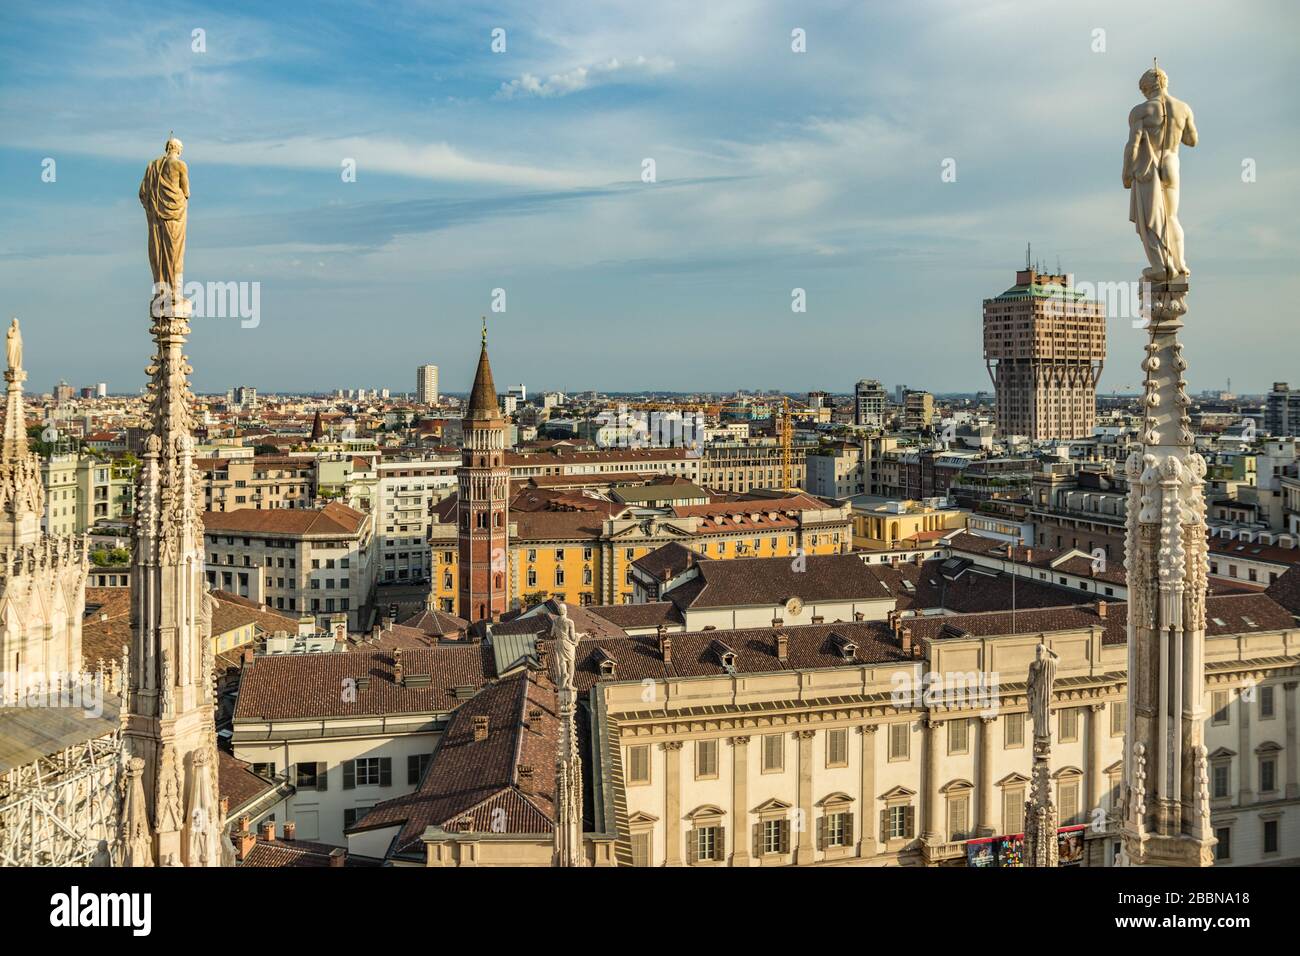 Mailand, Italien - 1. August 2019: Luftbild vom Dach des Mailänder Doms - Dom di Milano, Lombardei, Italien. Stockfoto